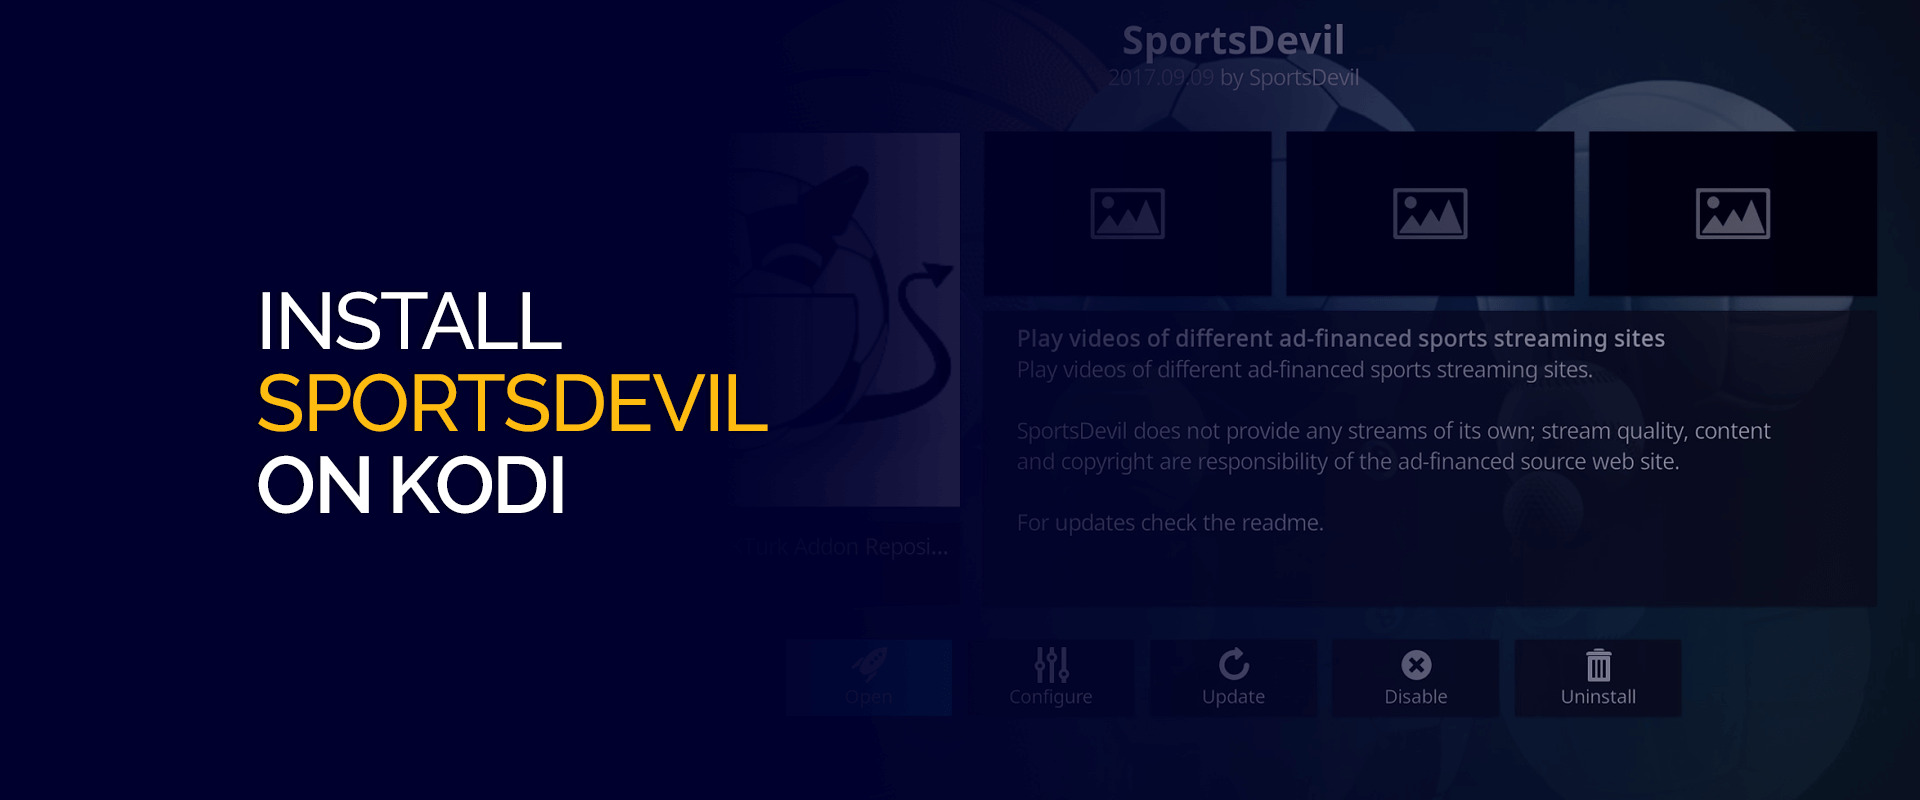 How To Download Sportsdevil For Kodi